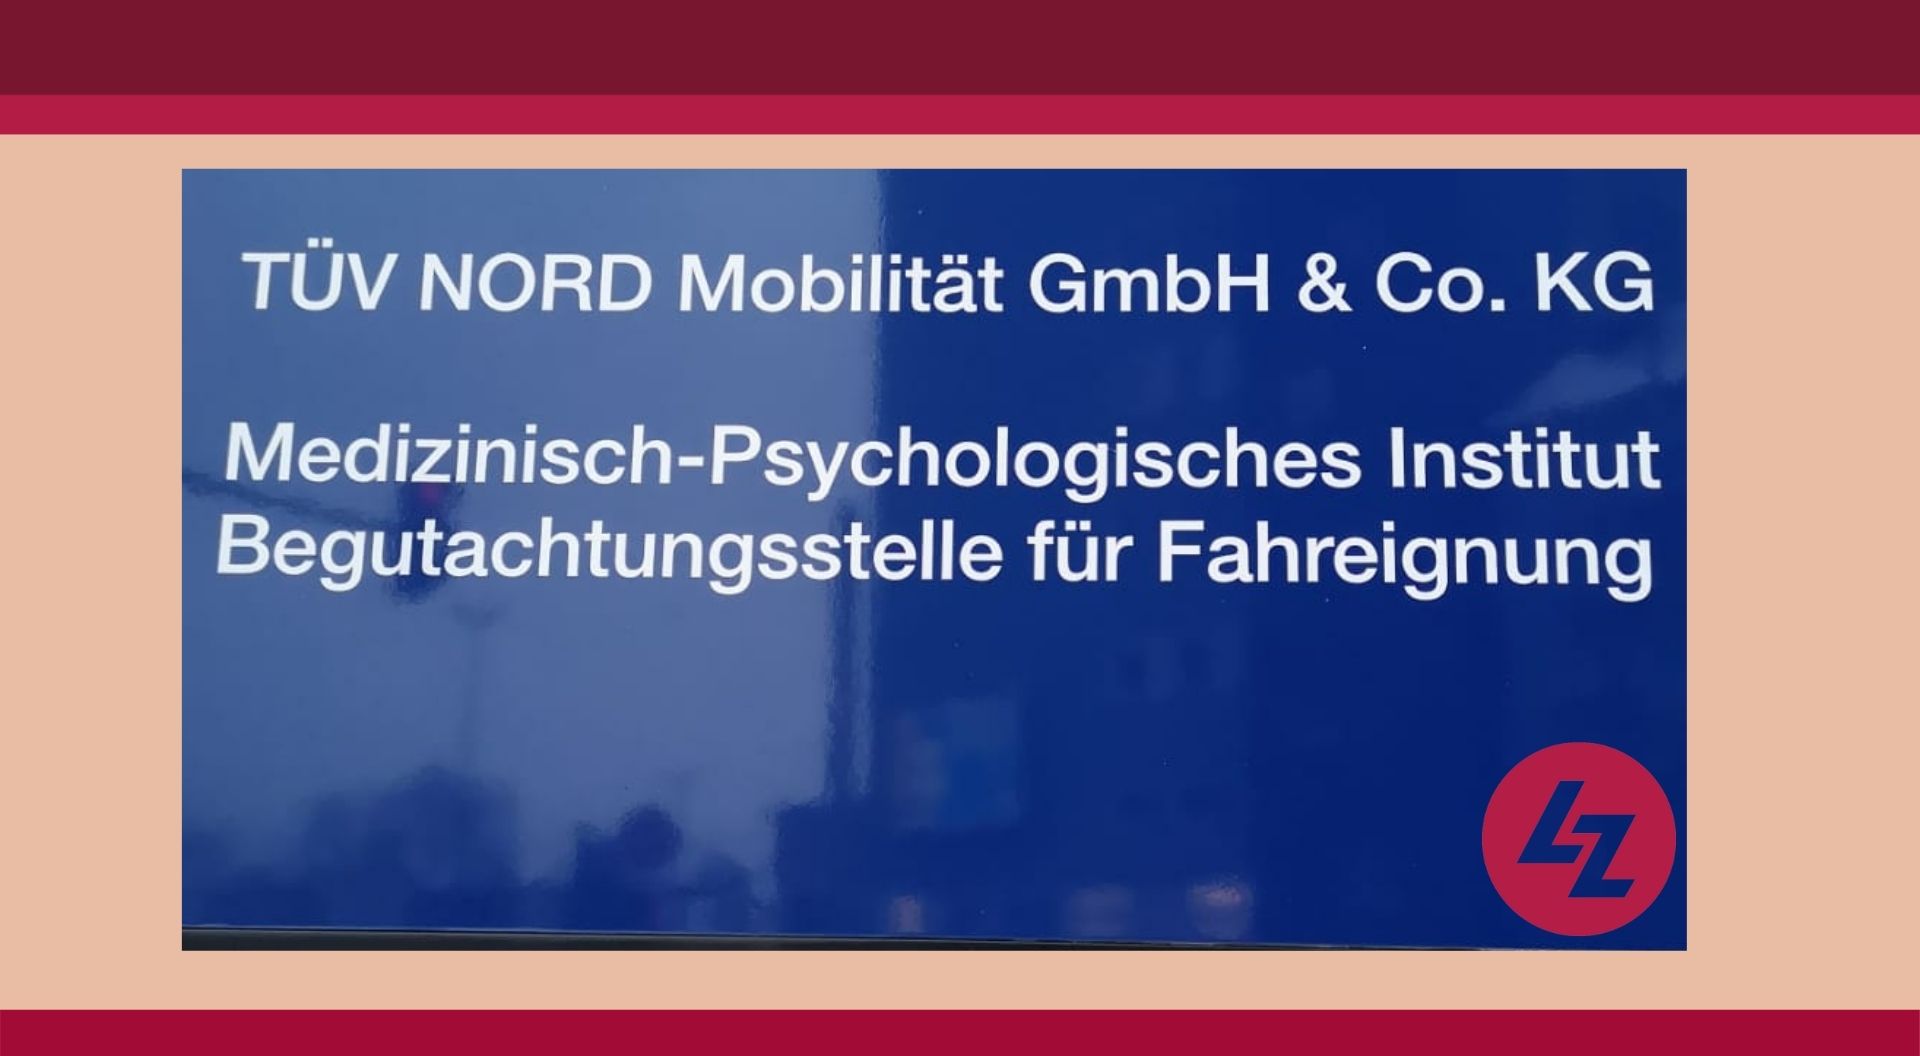 TÜV Nord Mobilität GmbH & Co. KG, Essen